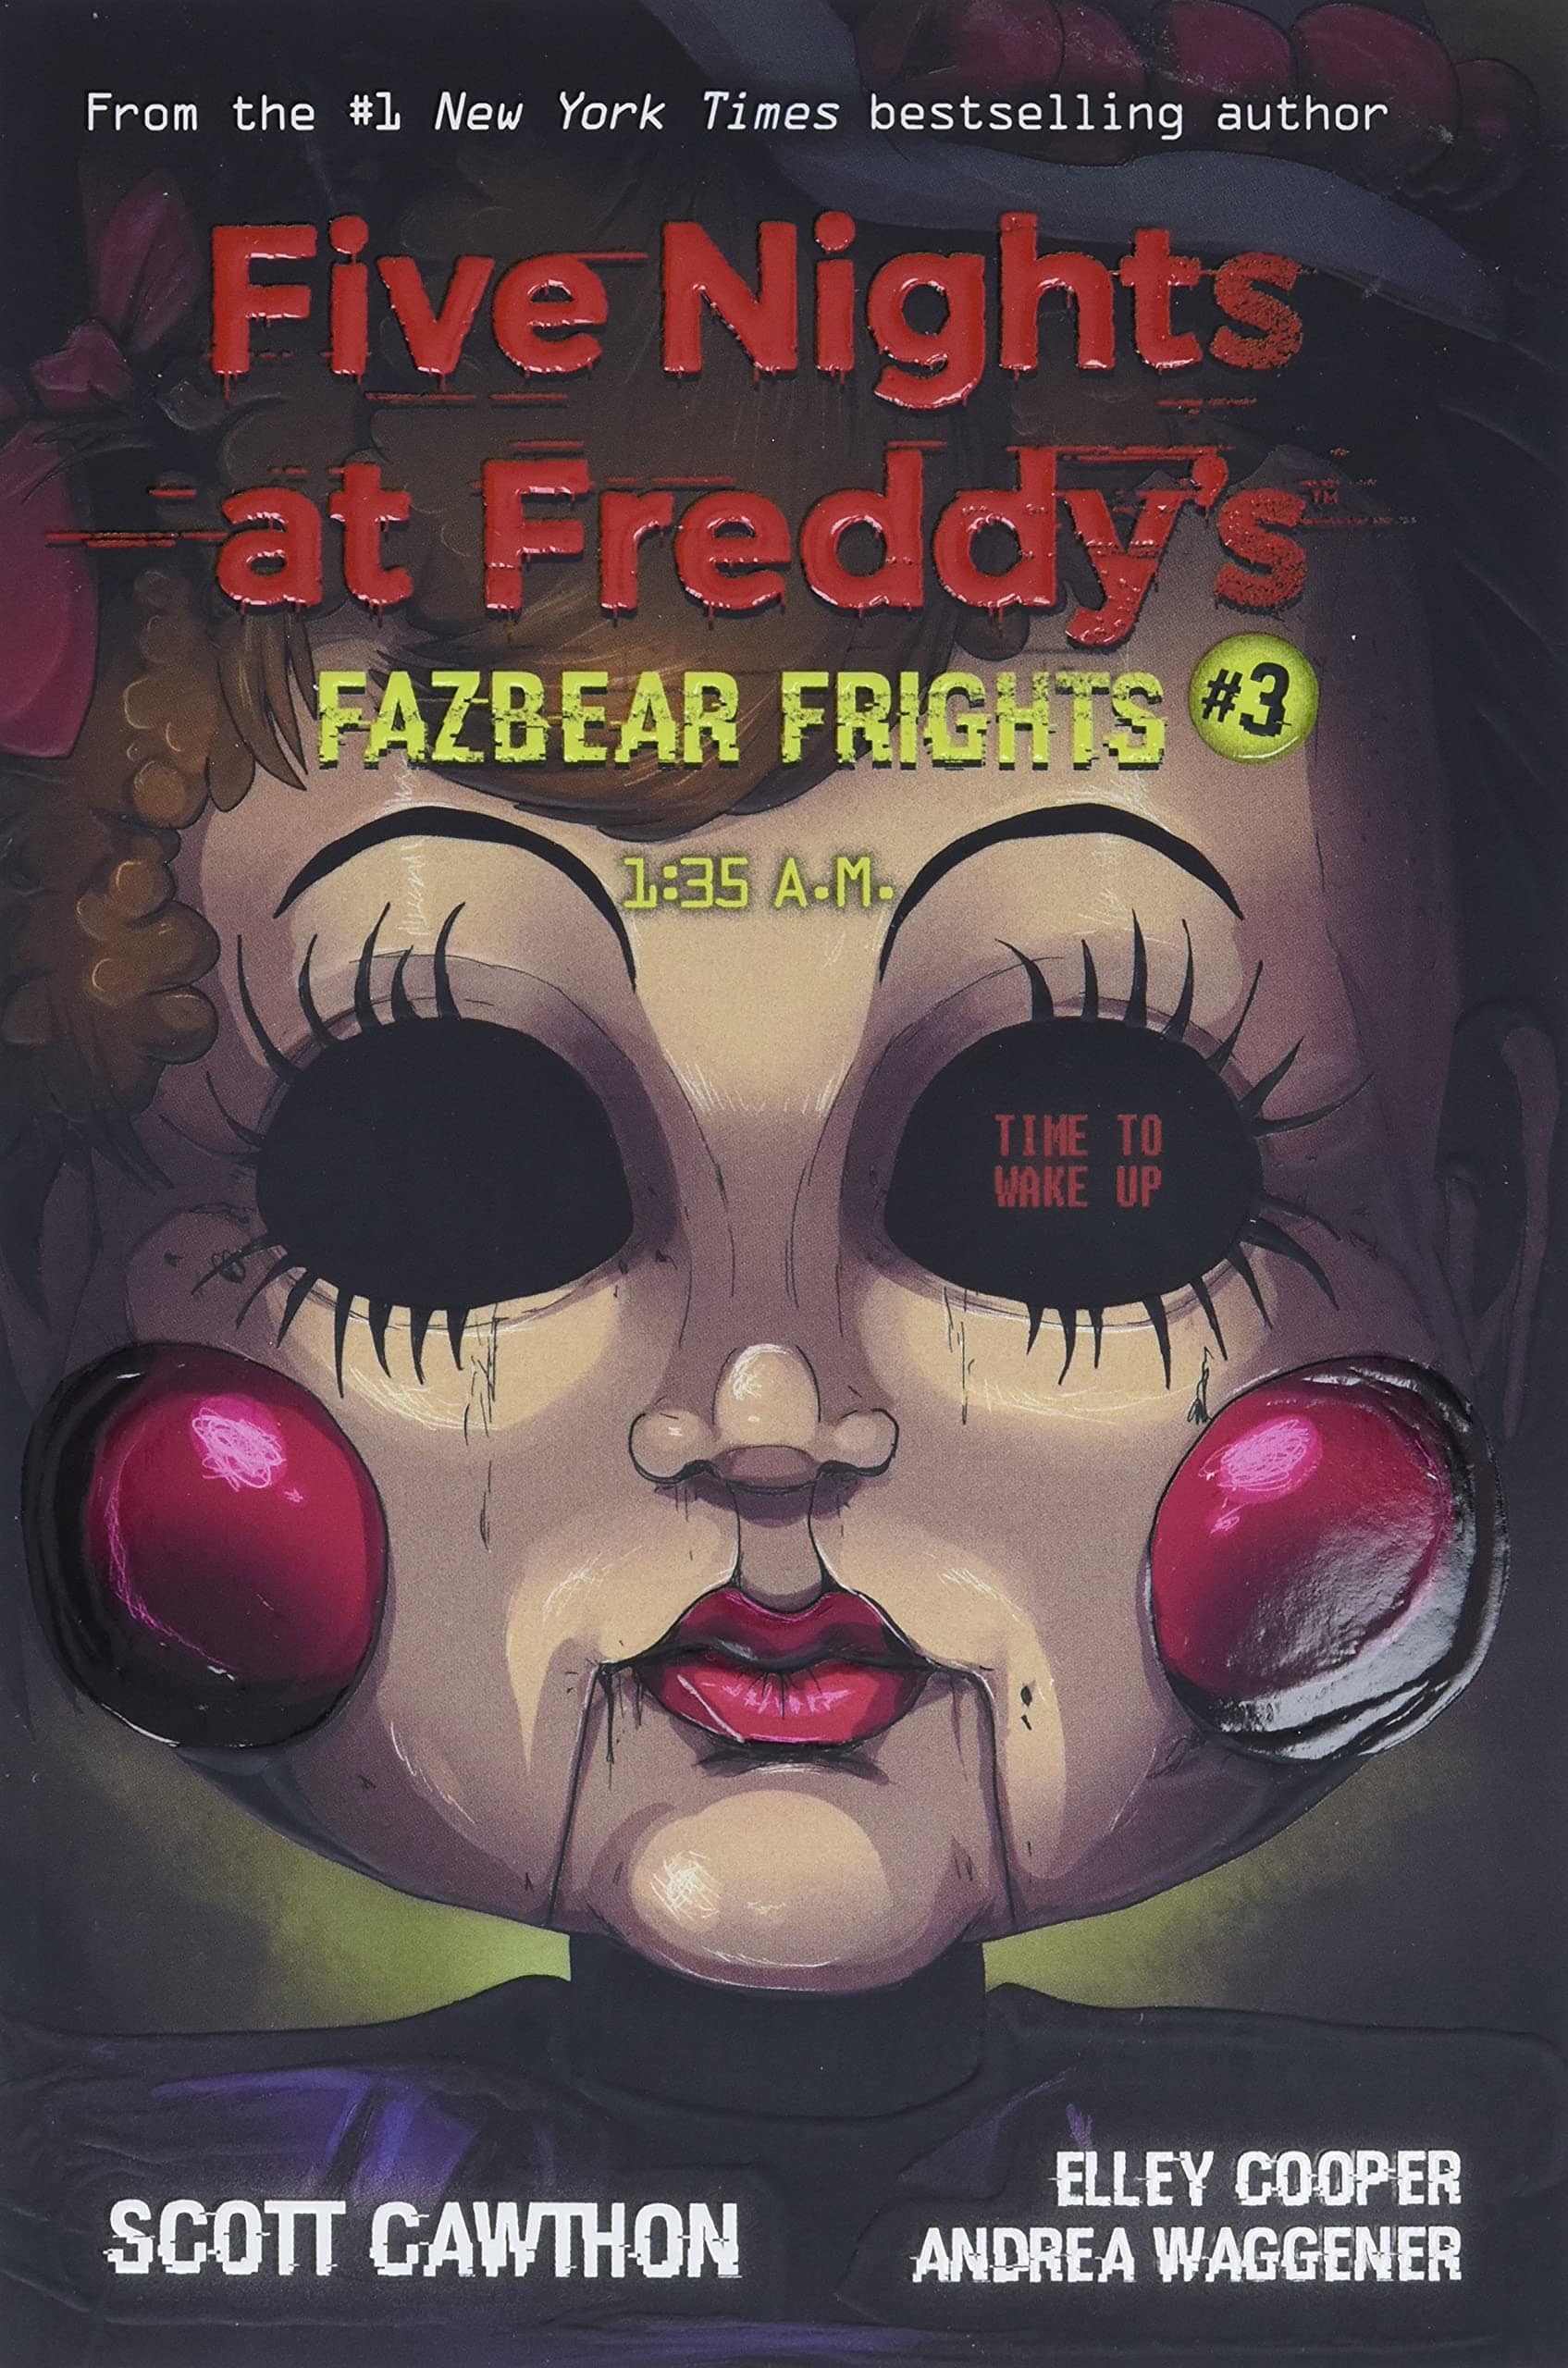 Five Nights at Freddy's: Fazbear Frights Vol. 3 - 1:35 AM - Third Eye